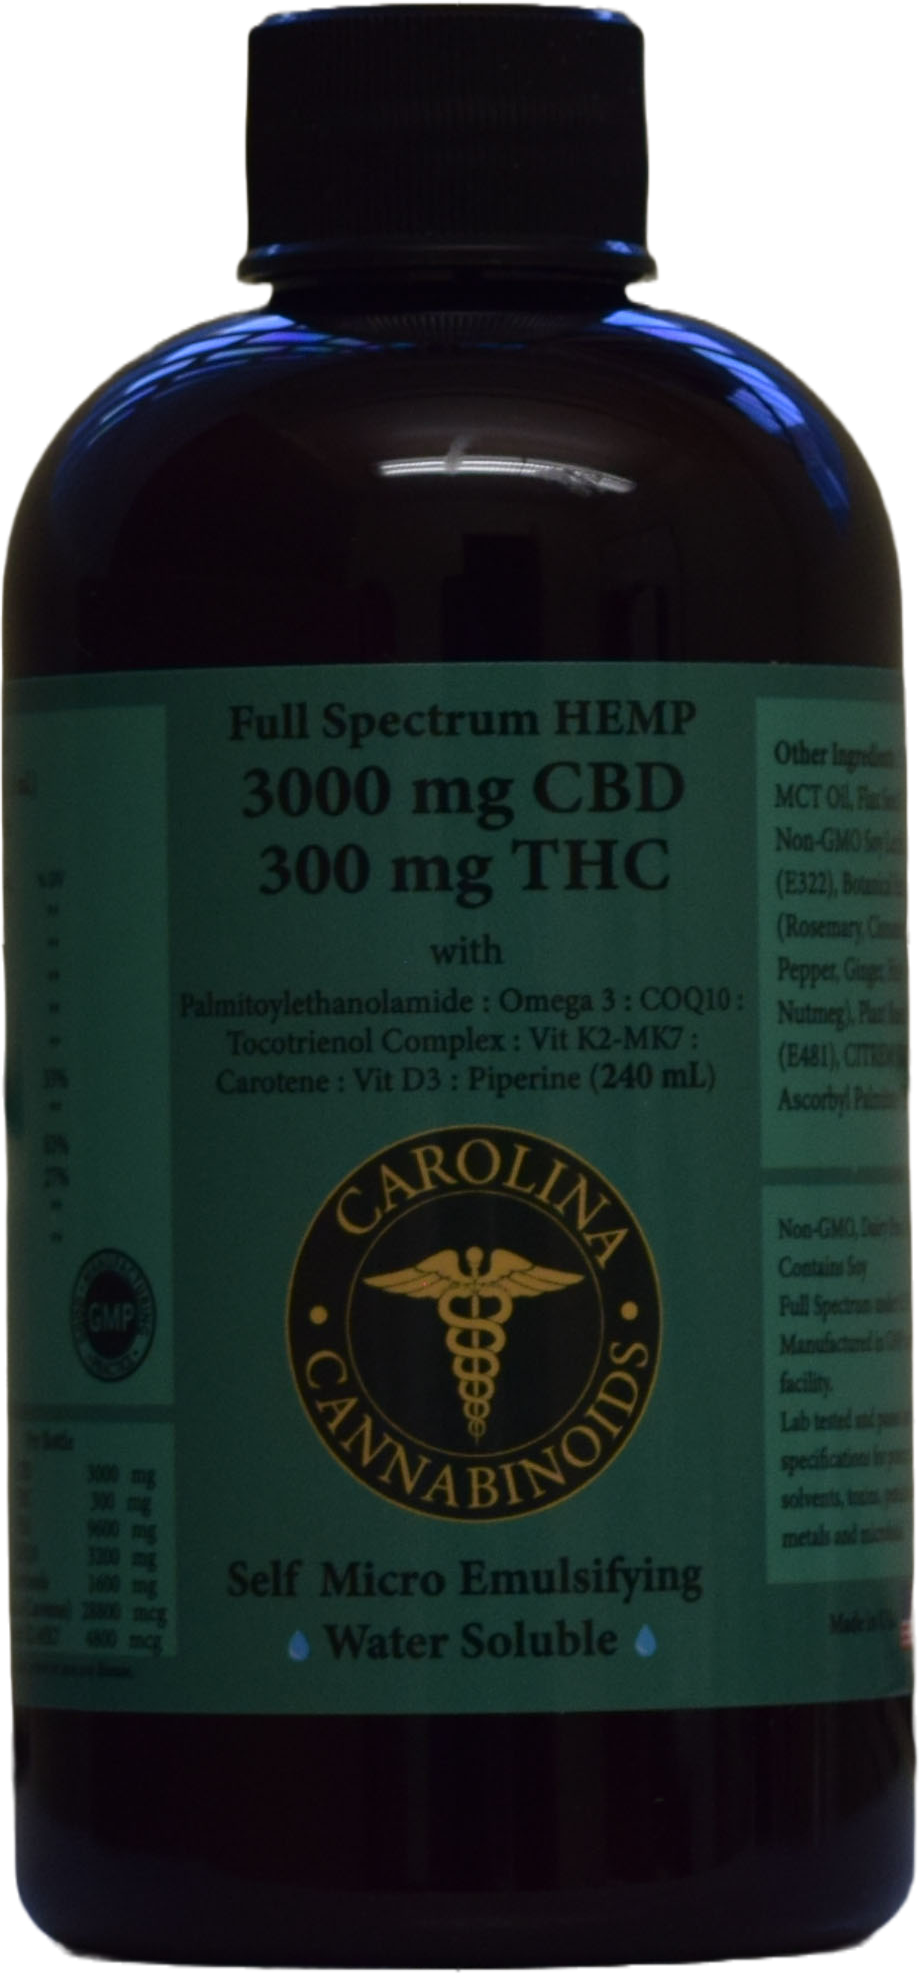 Carolina Cannabinoids - Buy CBD Online, Buy Cannabinoids Online 